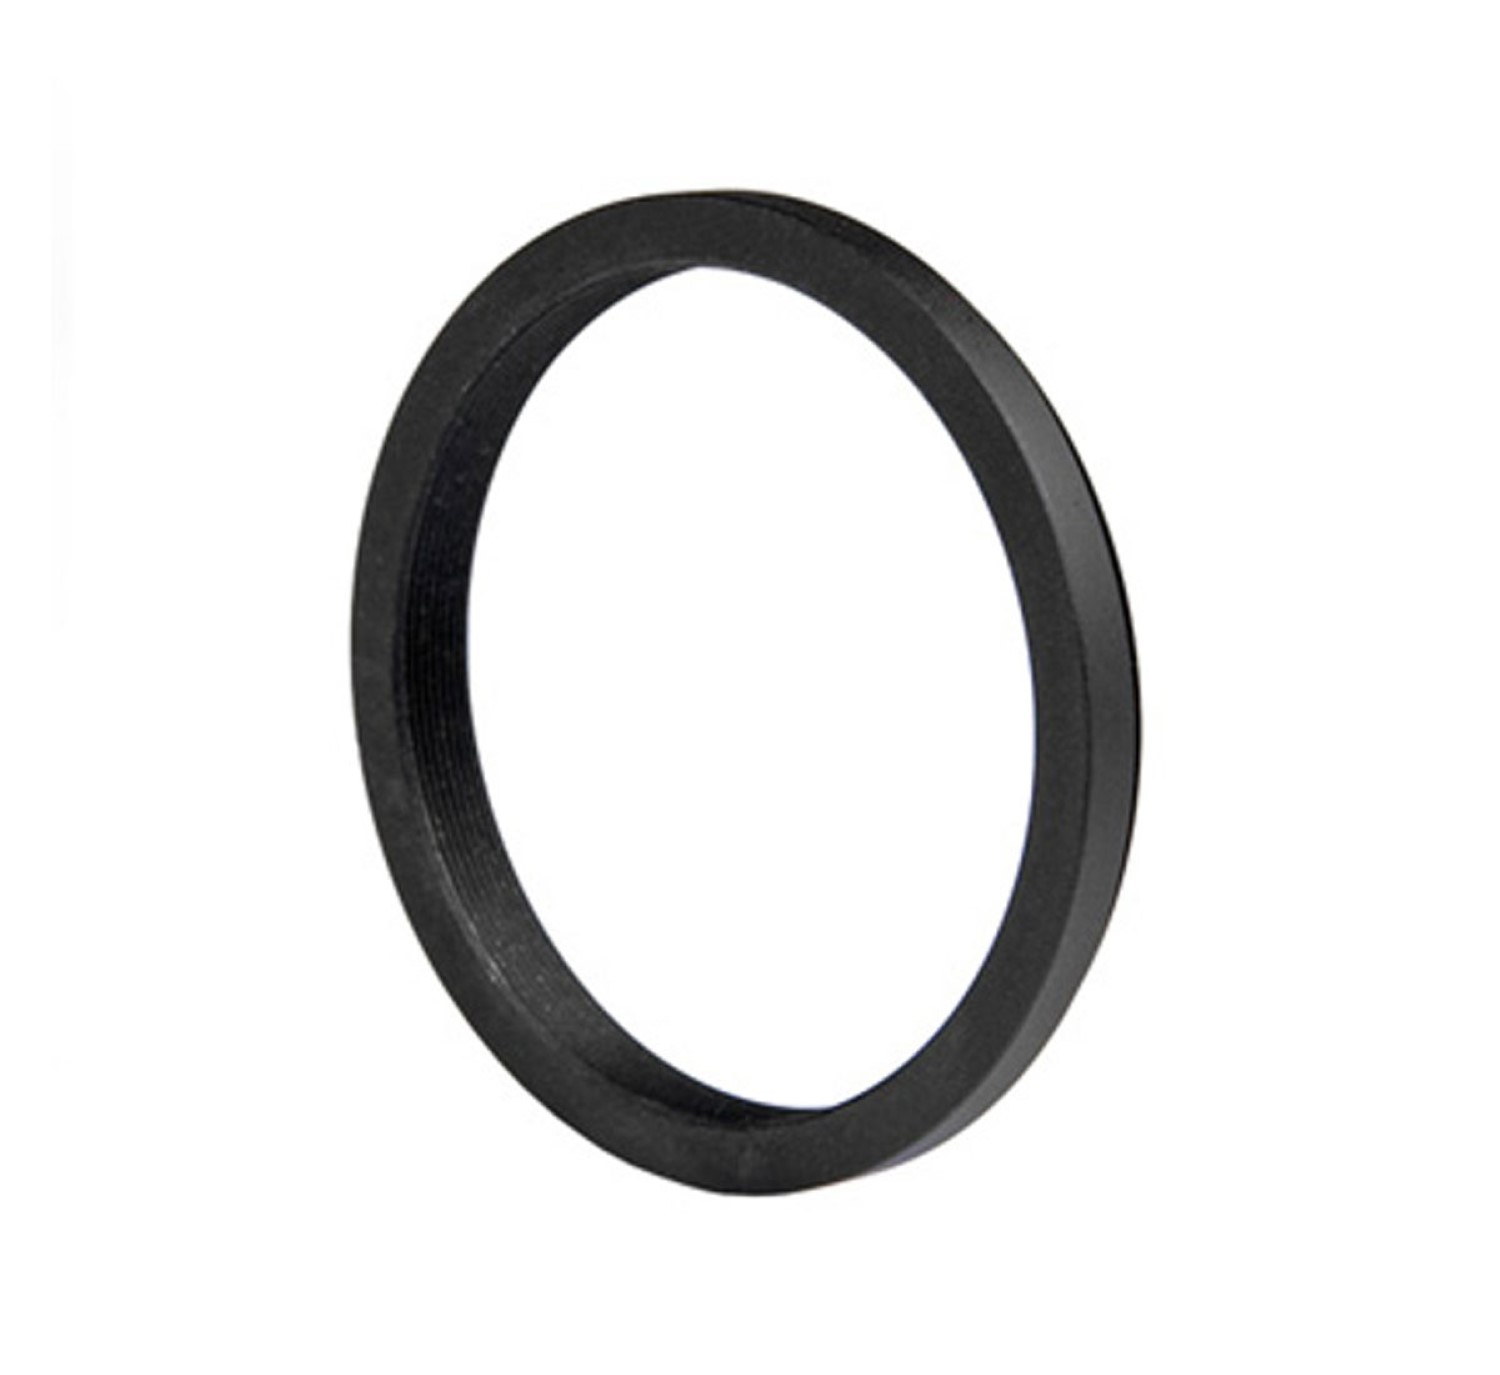 AYEX Step-Down Adapter, Objektive Ring, Black, passend für Filtergewinde mit